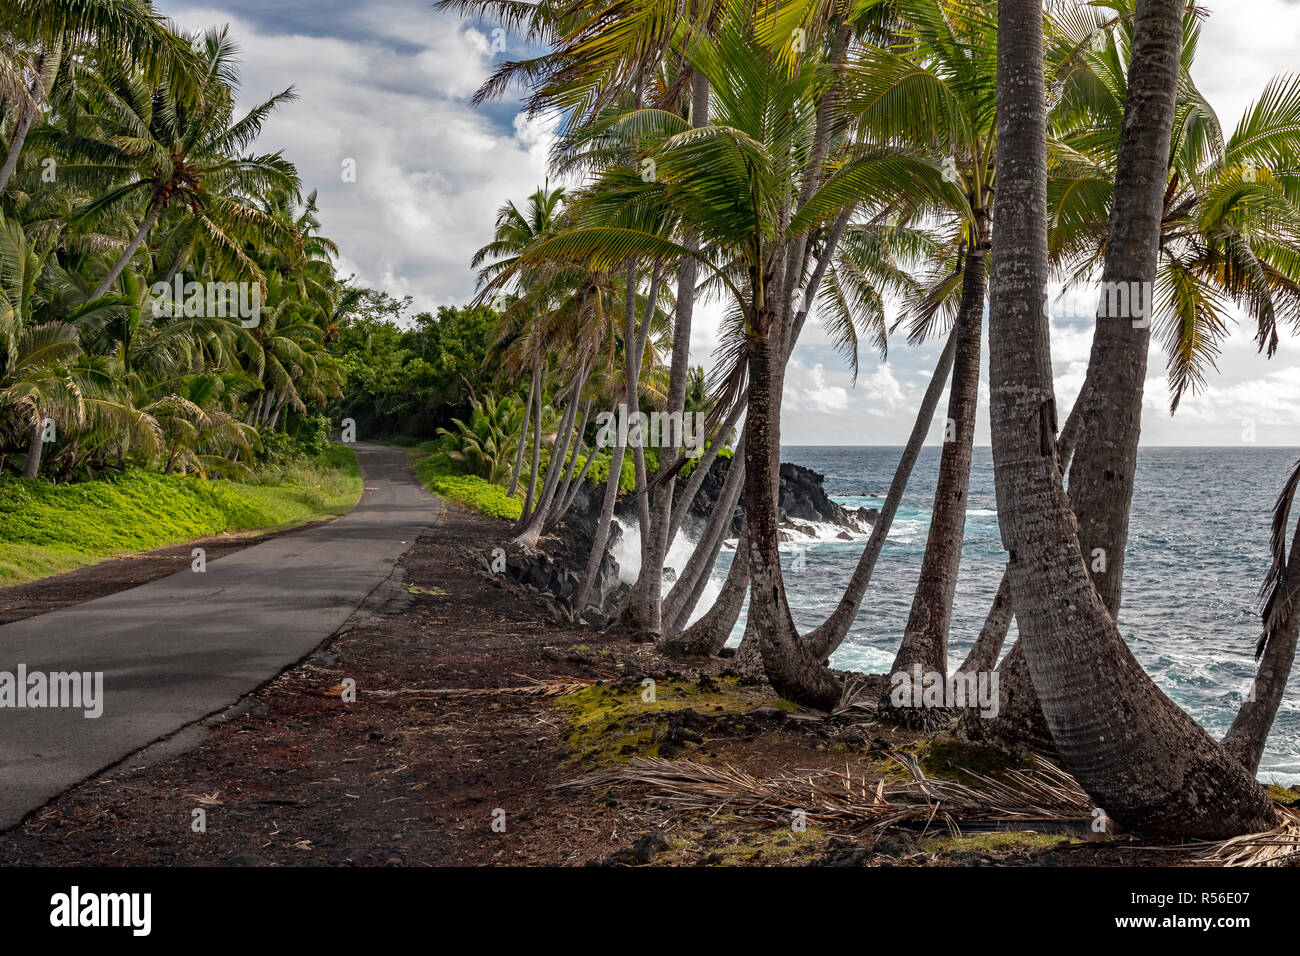 Opihikao, Hawaii - La côte du Pacifique dans la Puna District de la Grande île. Banque D'Images